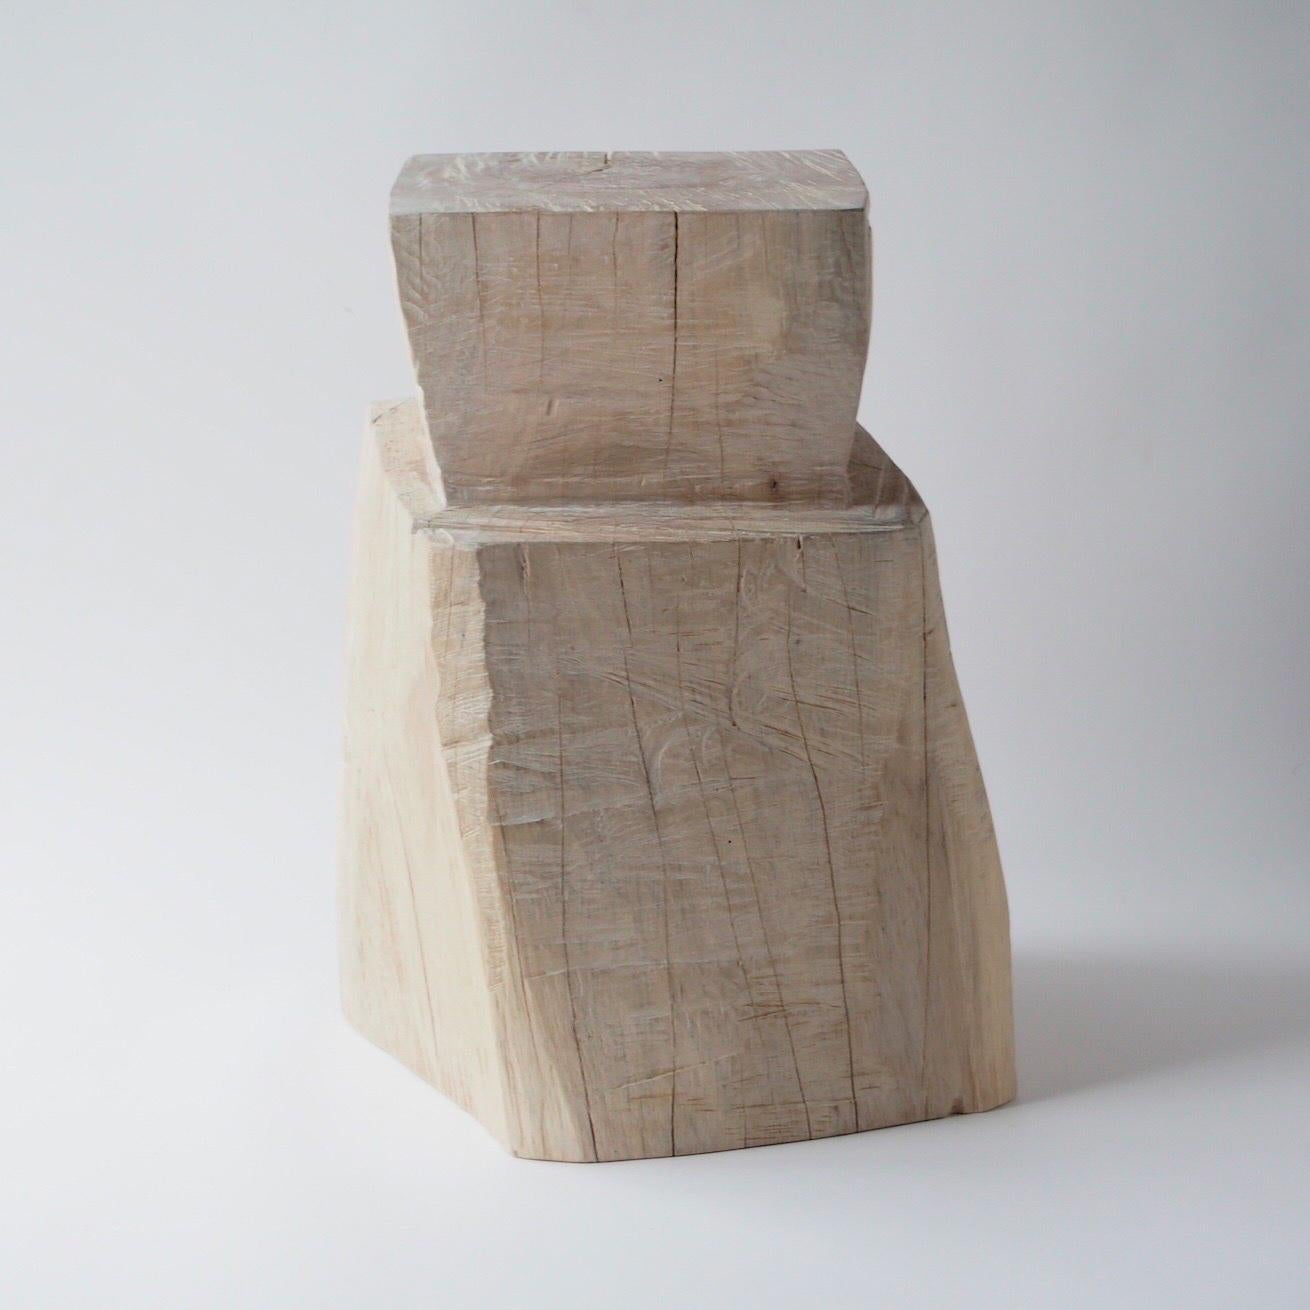 Nom : Nougat
Tabouret sculptural de Hiroyuki Nishimura et meubles sculptés en zone
Matériau : Zelkova
Cette œuvre est taillée dans le bois avec des sortes de tronçonneuses.
La plupart des bois utilisés pour les œuvres de Nishimura ne peuvent